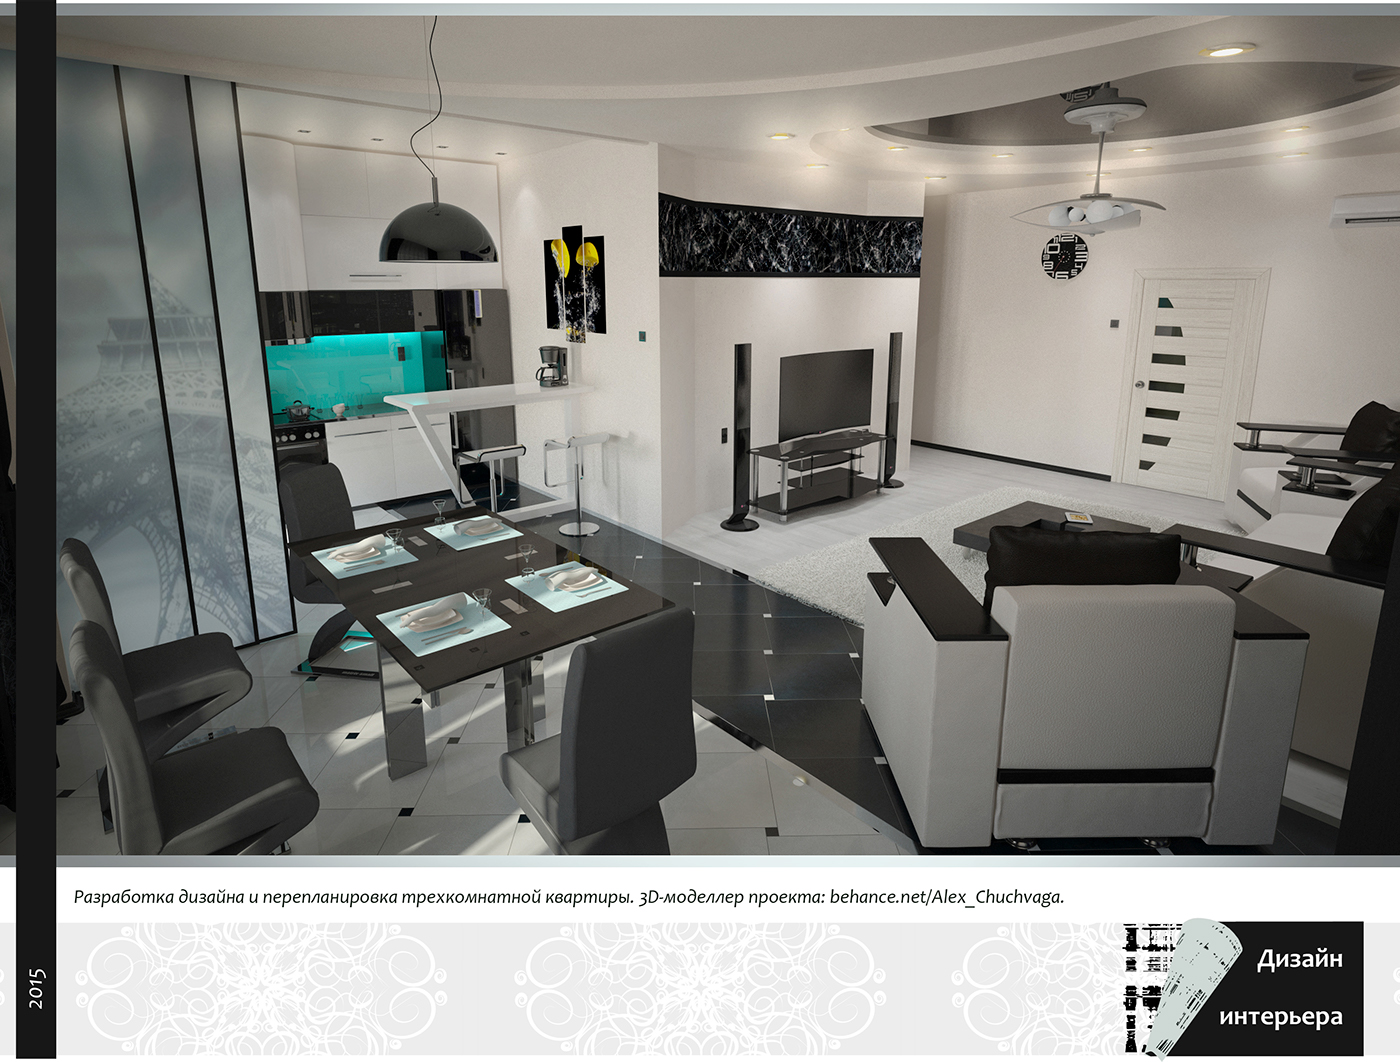 Черно-белый дизайн дизайн мебели дизайн интерьера перепланировка квартиры разработка дизайна студия минимализм